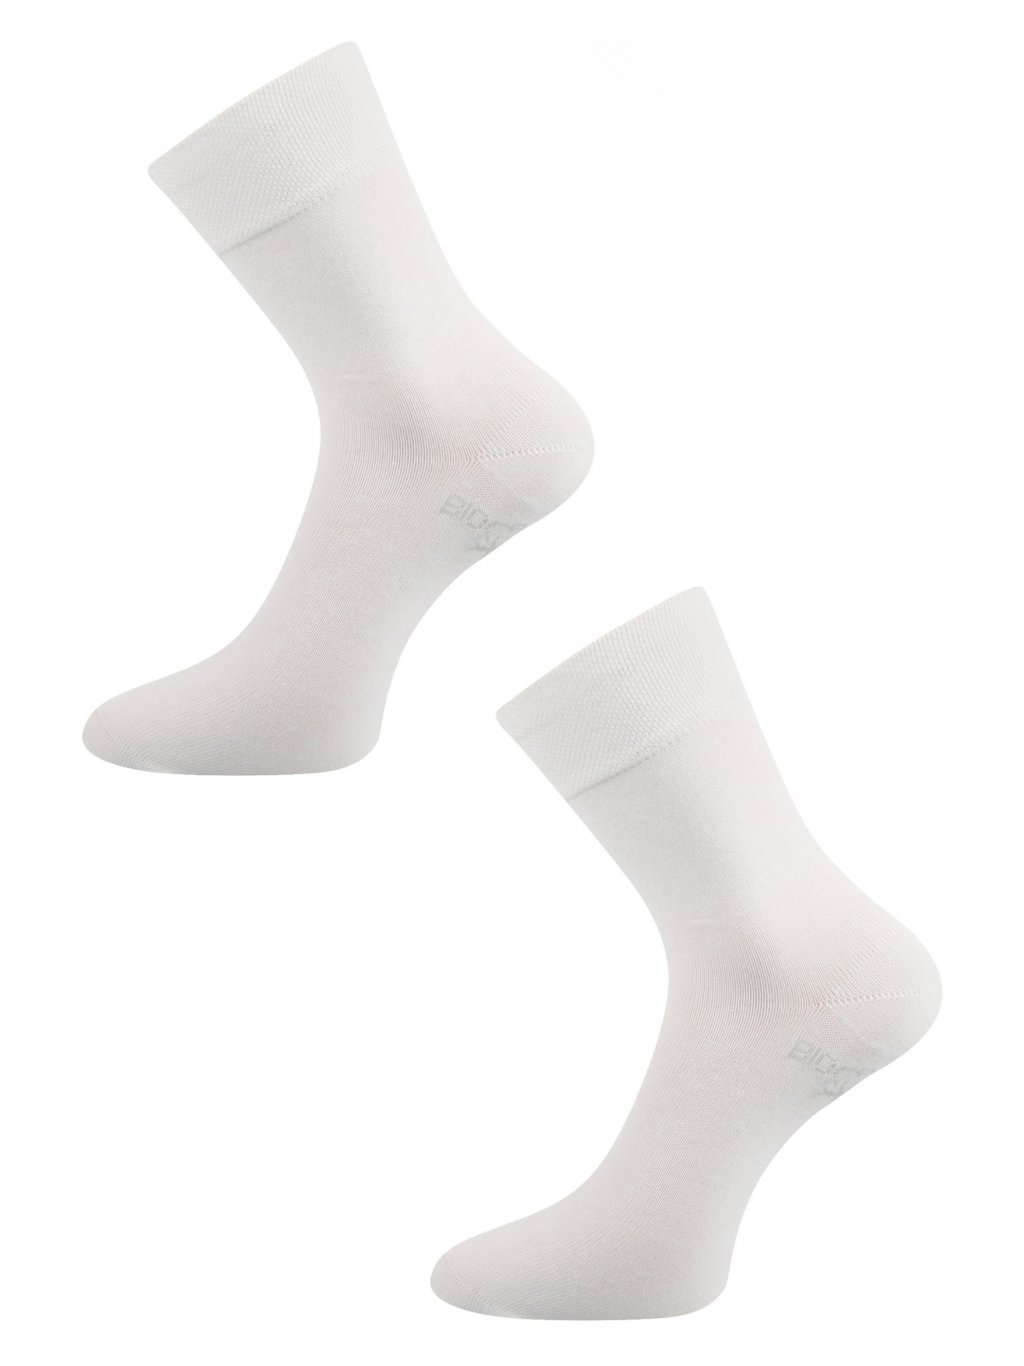 Pánské ponožky Bioban bílá detail dvojice